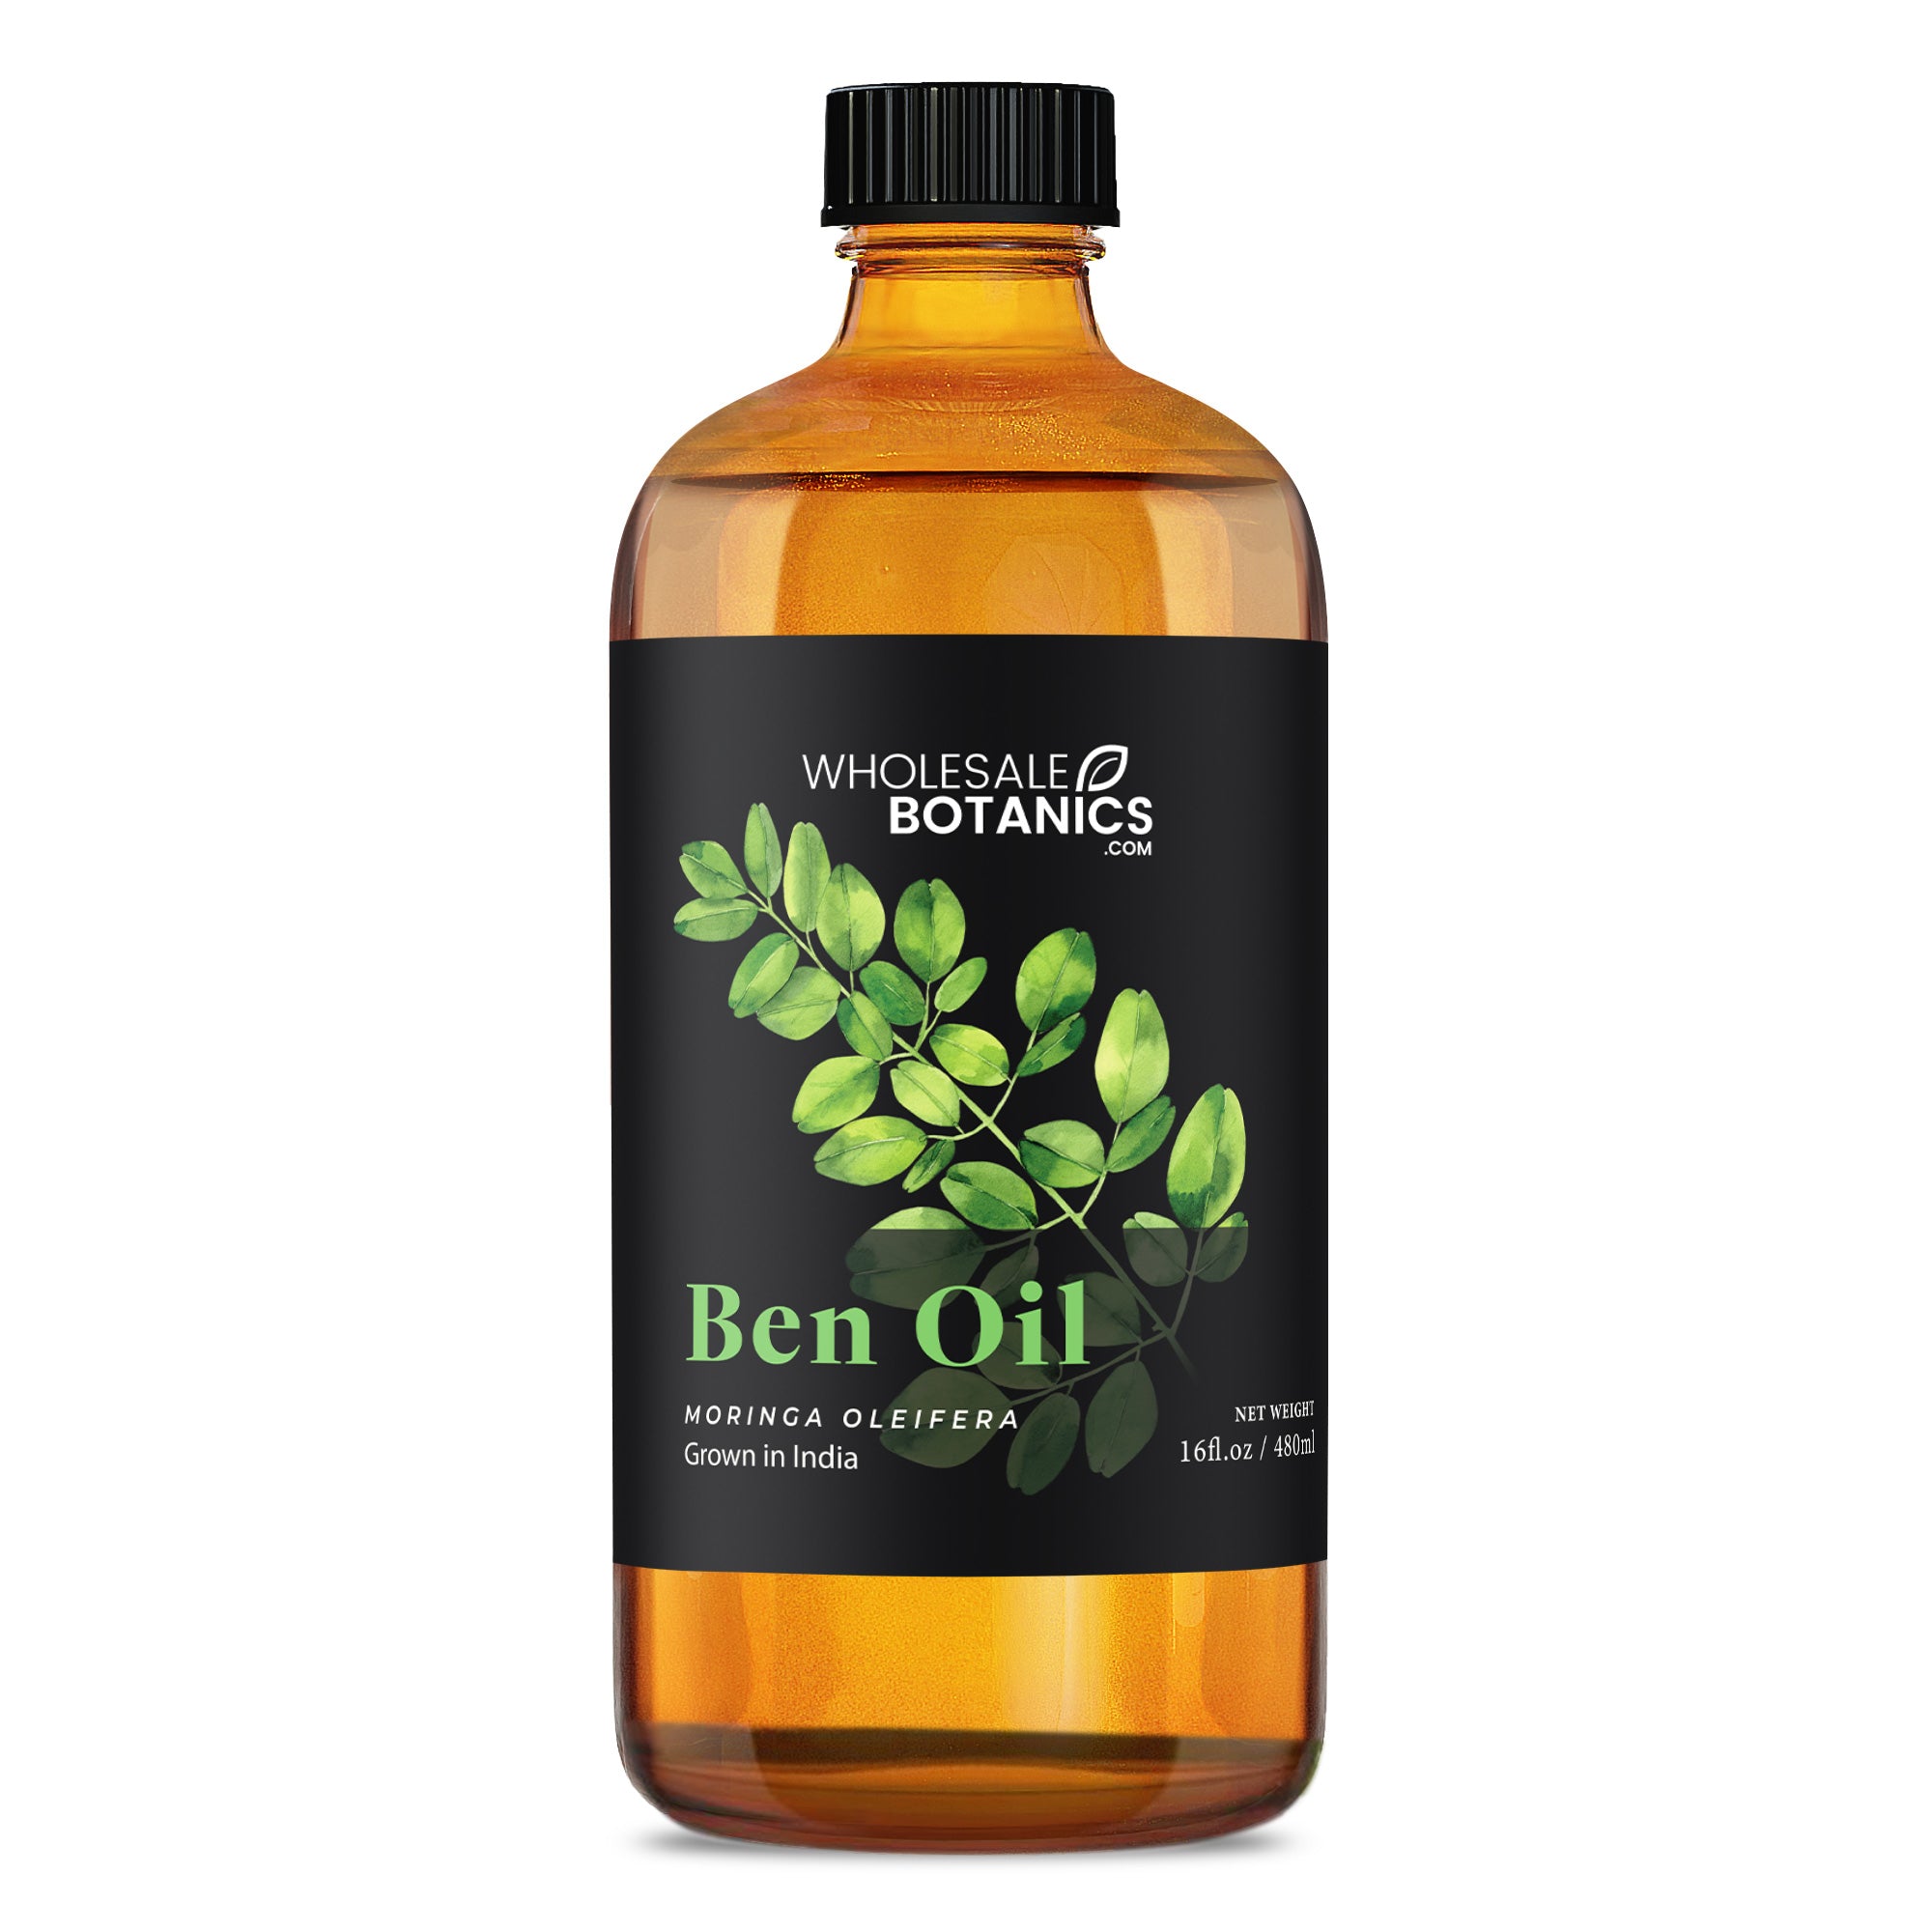 Ben Oil